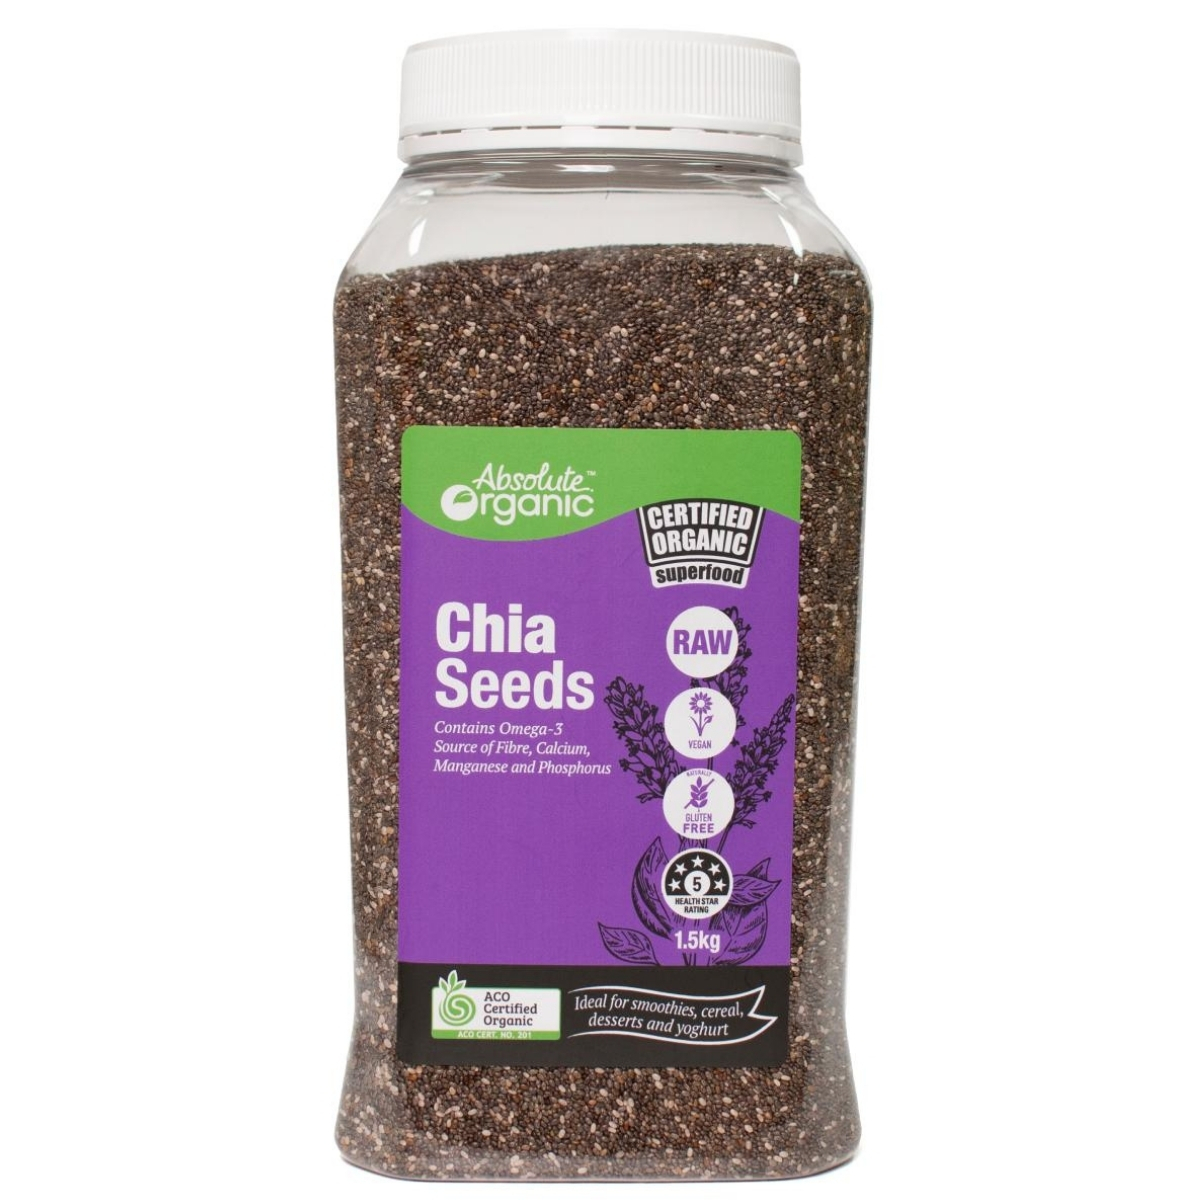 スムージー シリアル ヨーグルト などに合わせて Absolute Organic オーガニック ブランド買うならブランドオフ チアシード 1.5kg Seeds スーパーフード 送料無料激安祭 コストコ 有機 ヴィーガン Chia グルテンフリー COSTCO